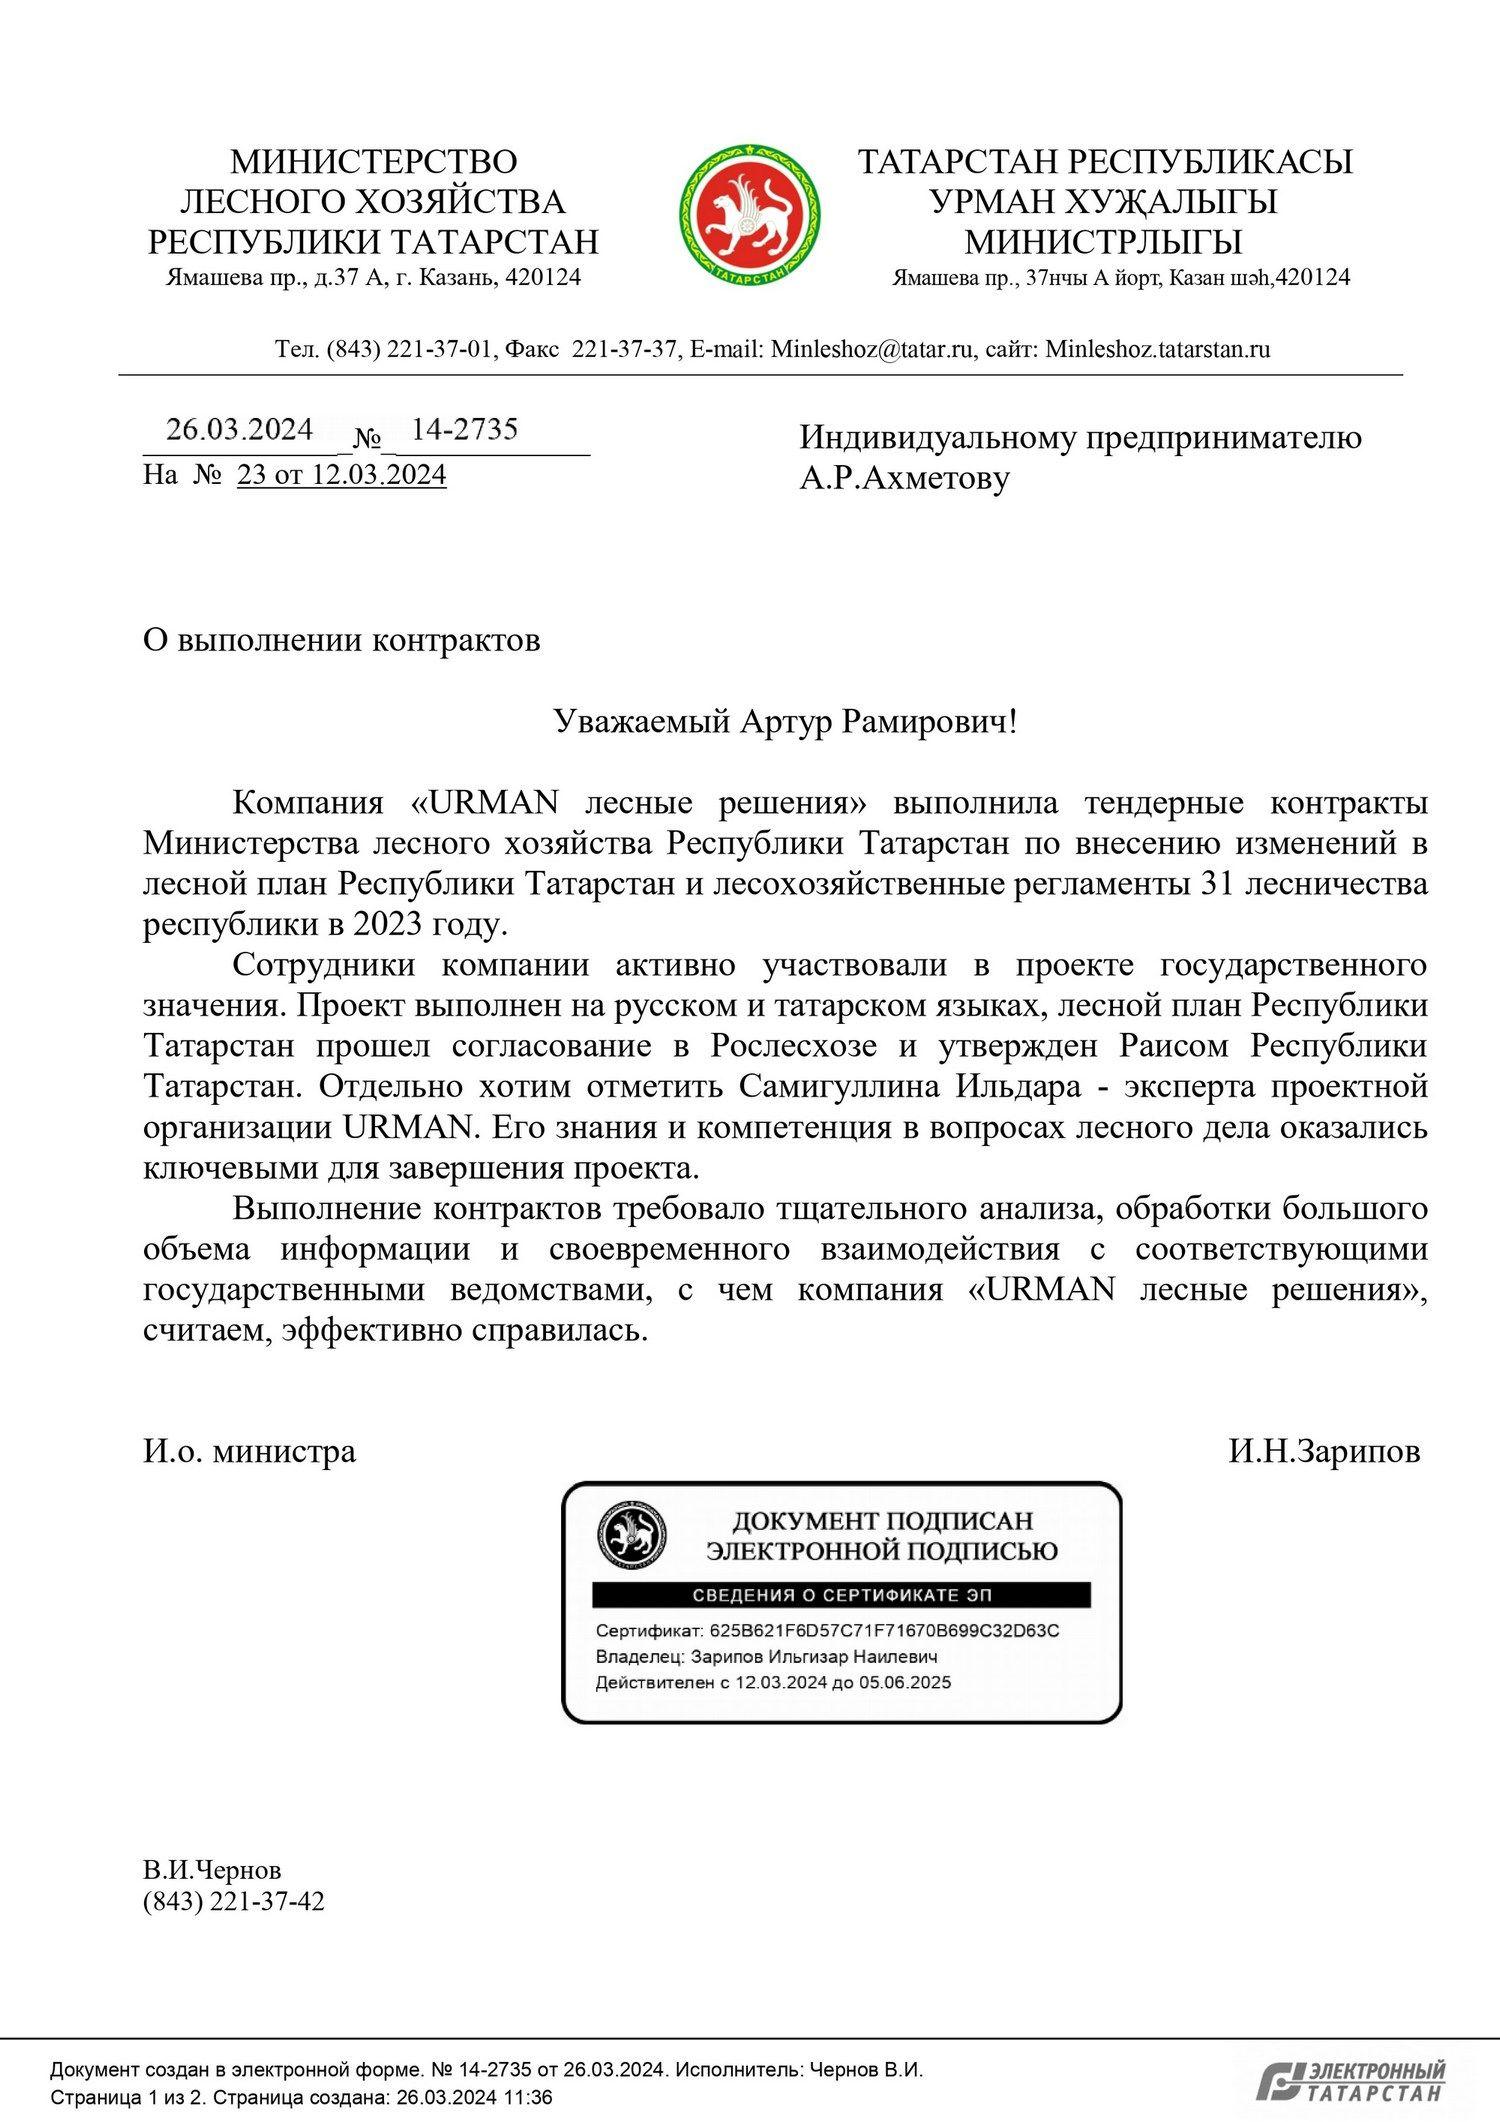 Рекомендательное письмо от Министерство лесного хозяйства Республики Татарстан